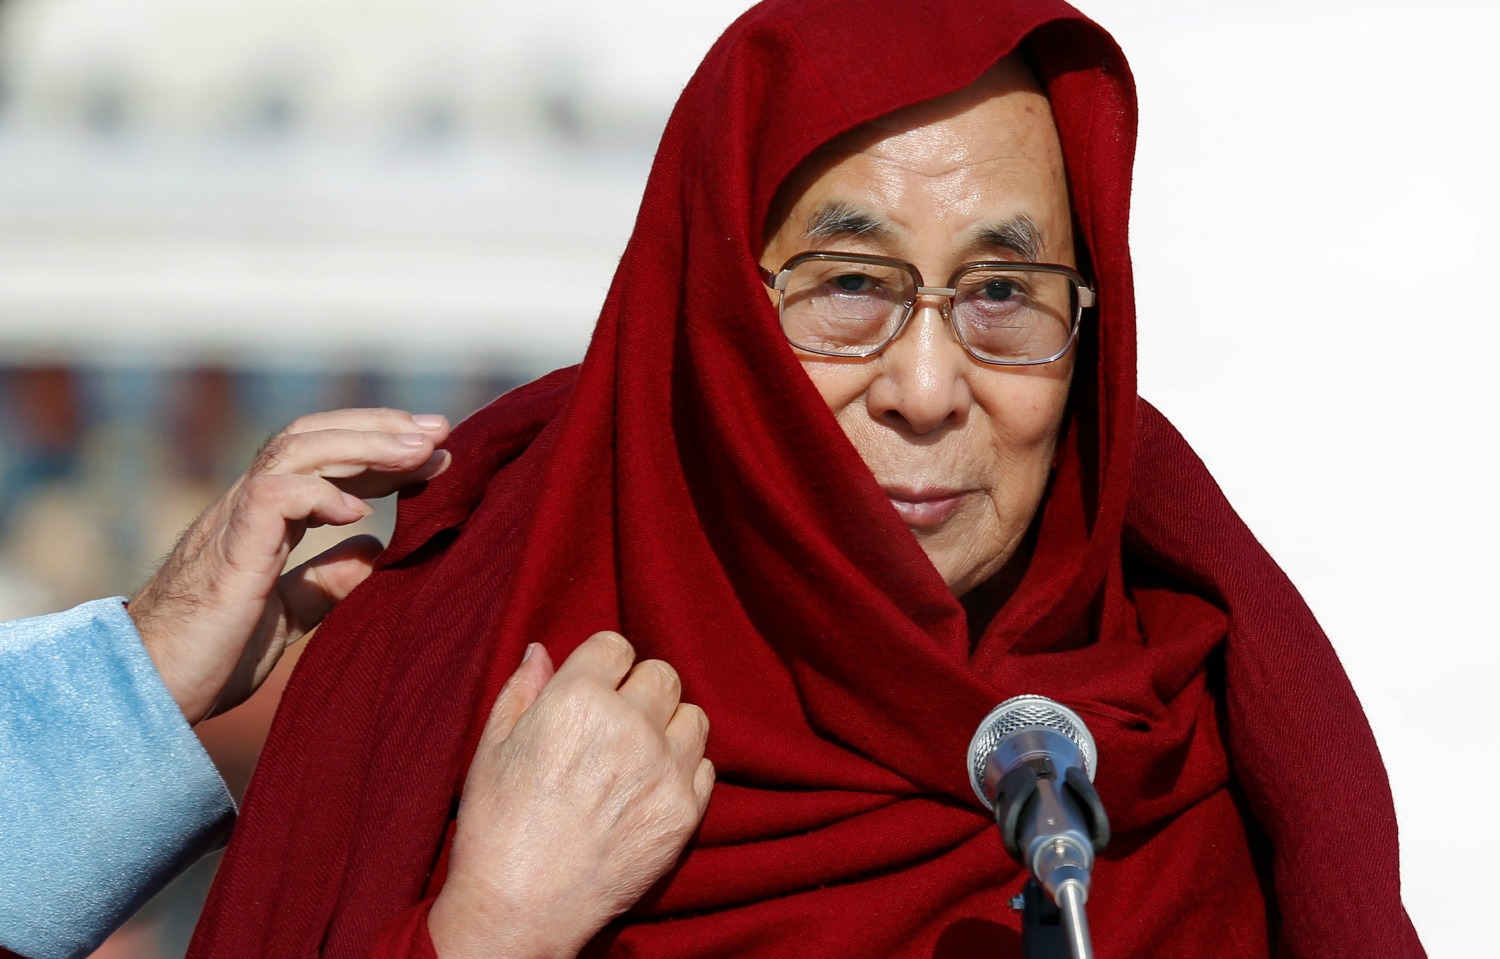 El Dalai Lama quiere reunirse con Trump tras su toma de posesión